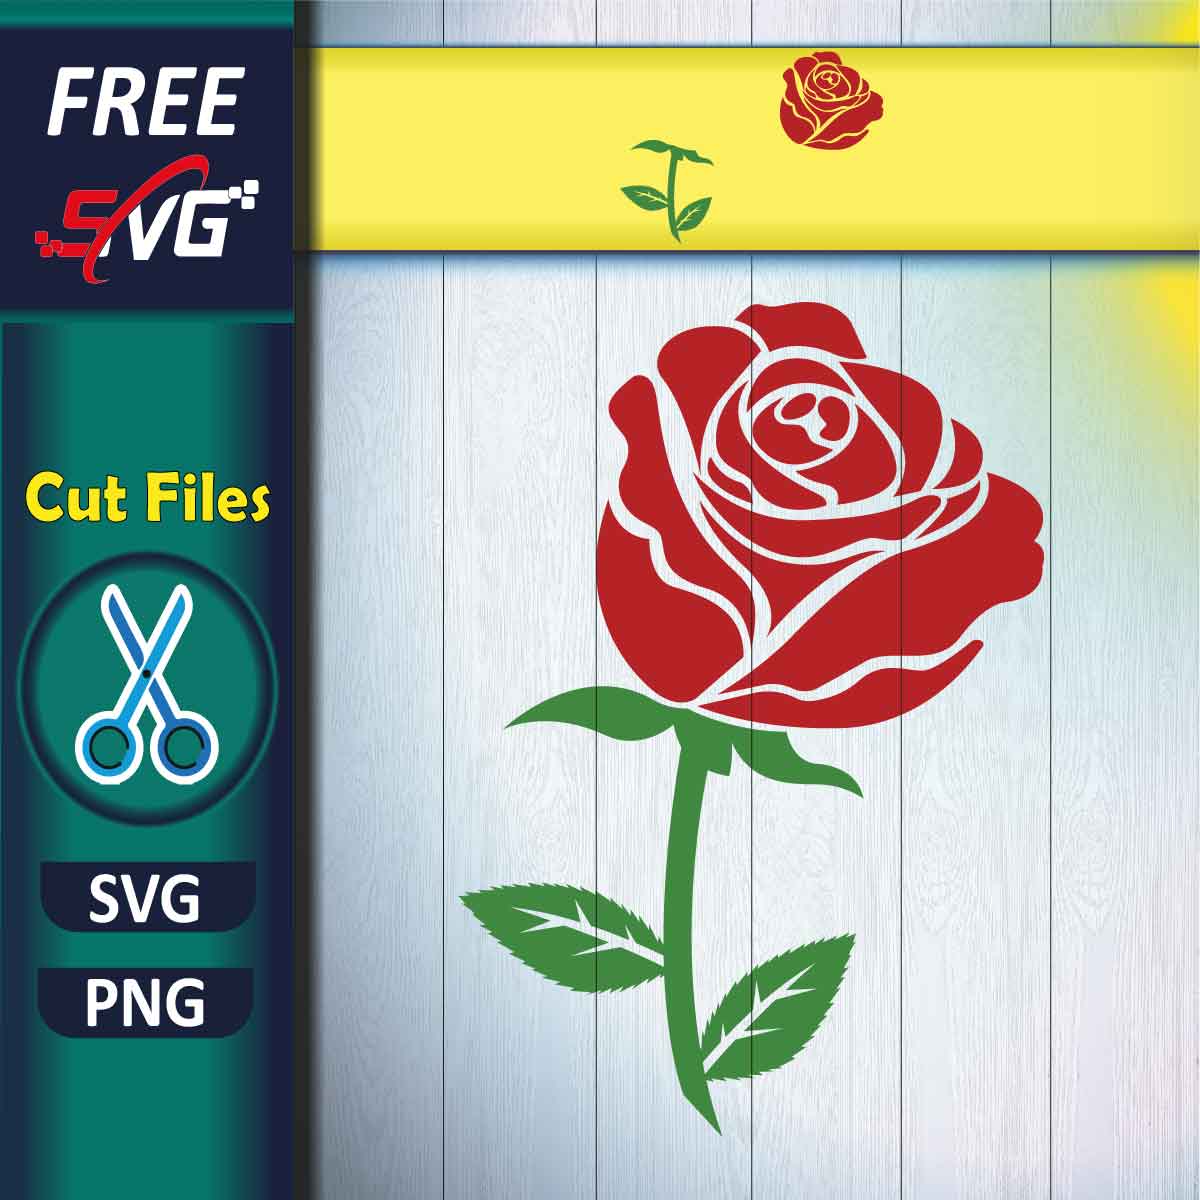 Rose SVG - Get Free SVG